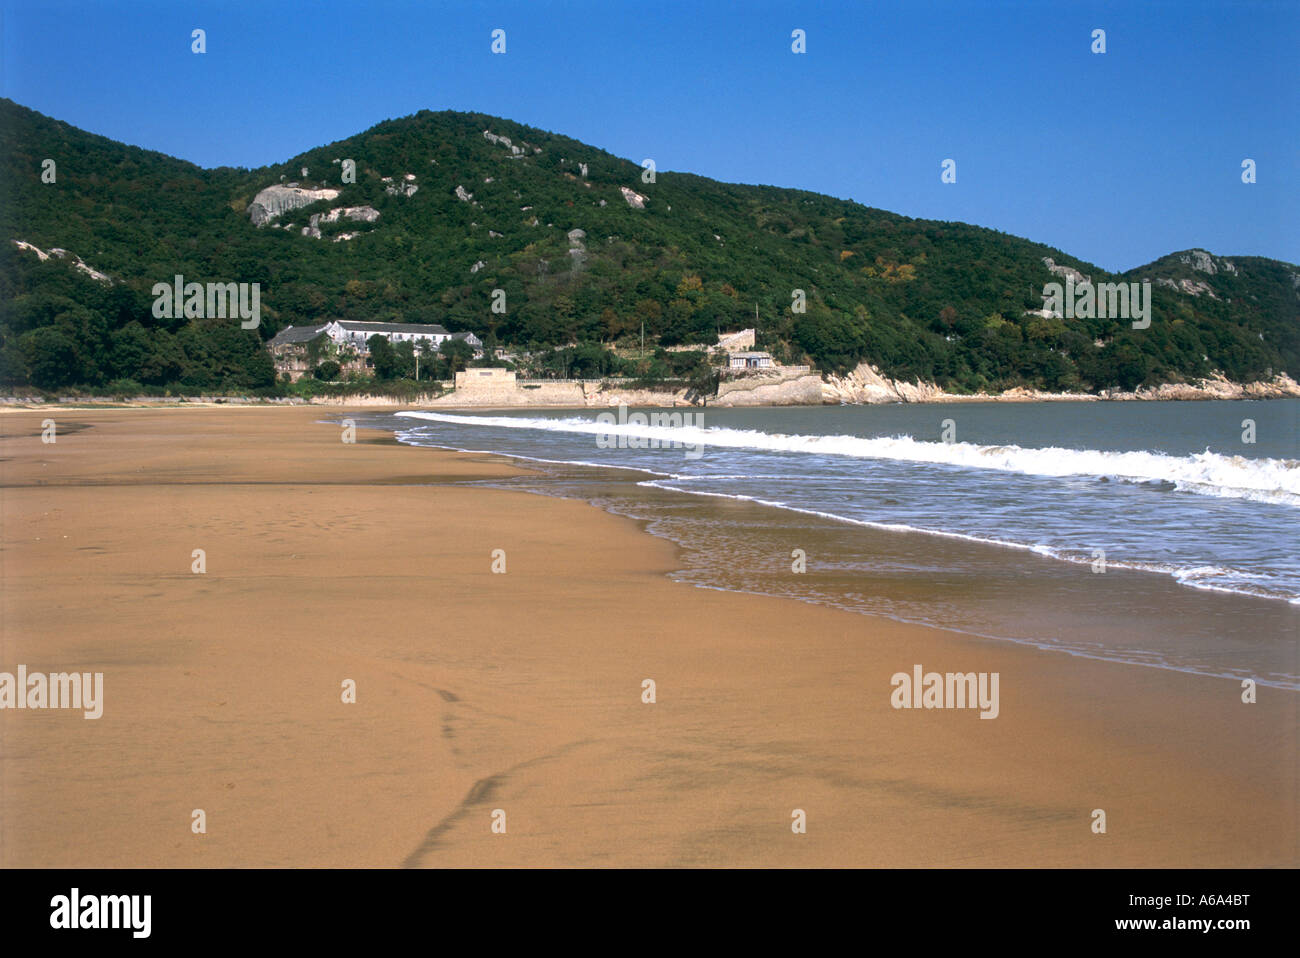 China, Zhejiang, Putuo Shan, Qian Bu Sha (Thousand Step Beach), waves rolling over wet sand of deserted beach Stock Photo